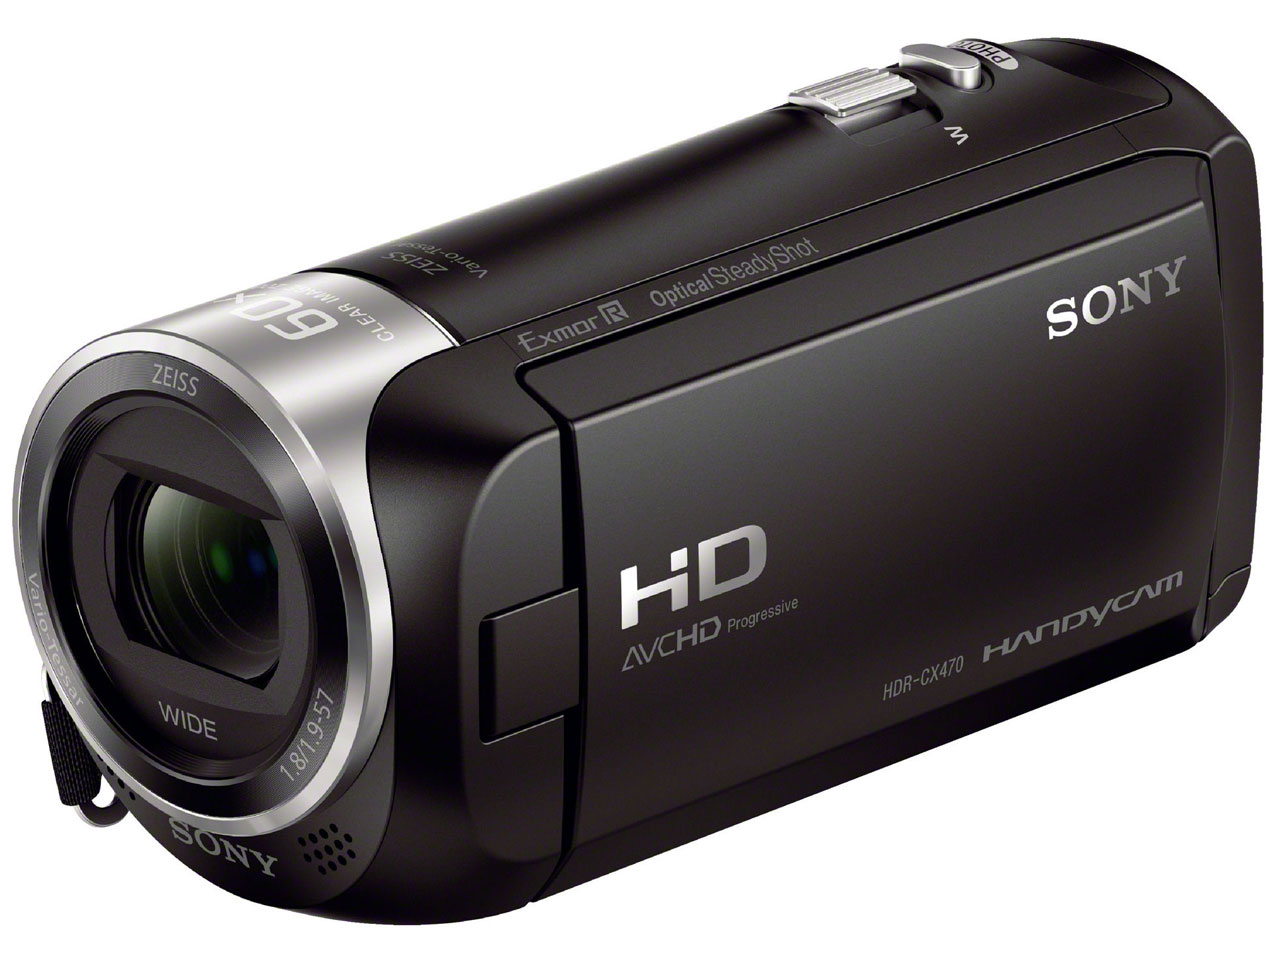 HDR-CX470-BK SONY ソニー デジタルHDビデオカメラ 新作入荷 4548736060425 HDR-CX470 ブラック 在庫あり 国内送料無料 送料無料 新品